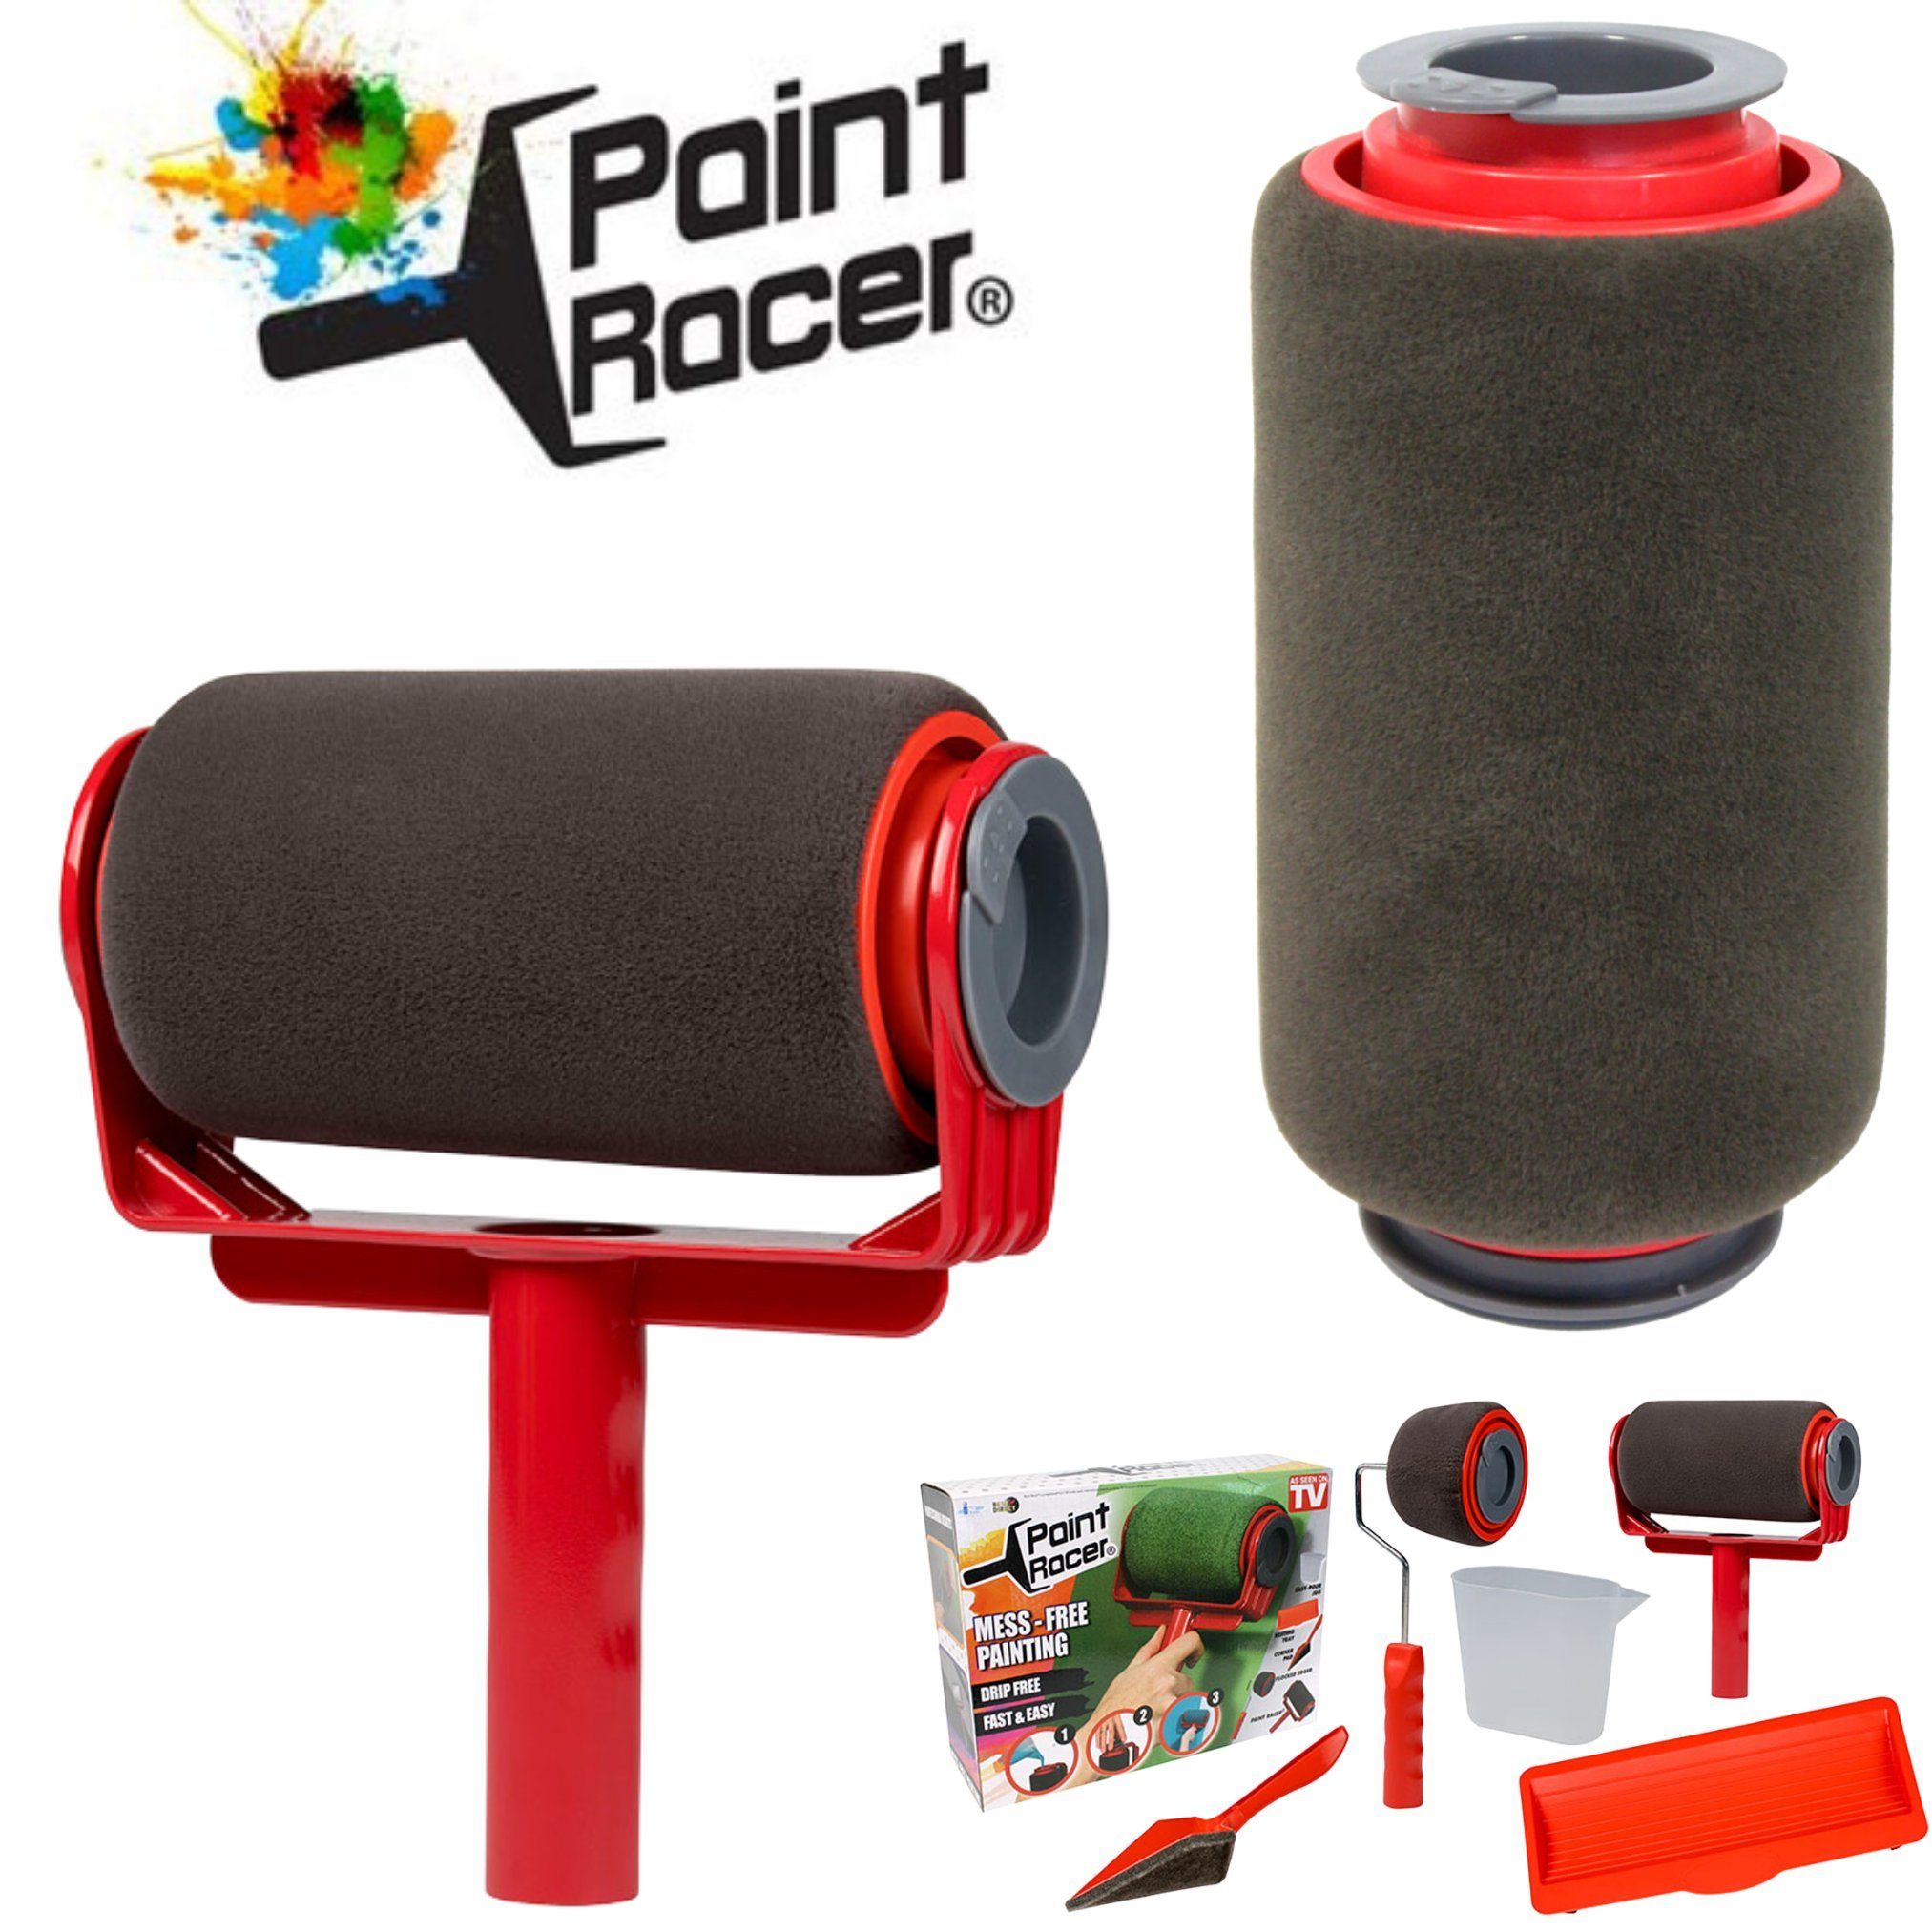 Best Direct® Farbroller Paint Racer® Set Farbroller (Set, Malerei, -St.5), Farbroller für befüllbarer Wand, Multifunktion Tank, Decke Büro, mit